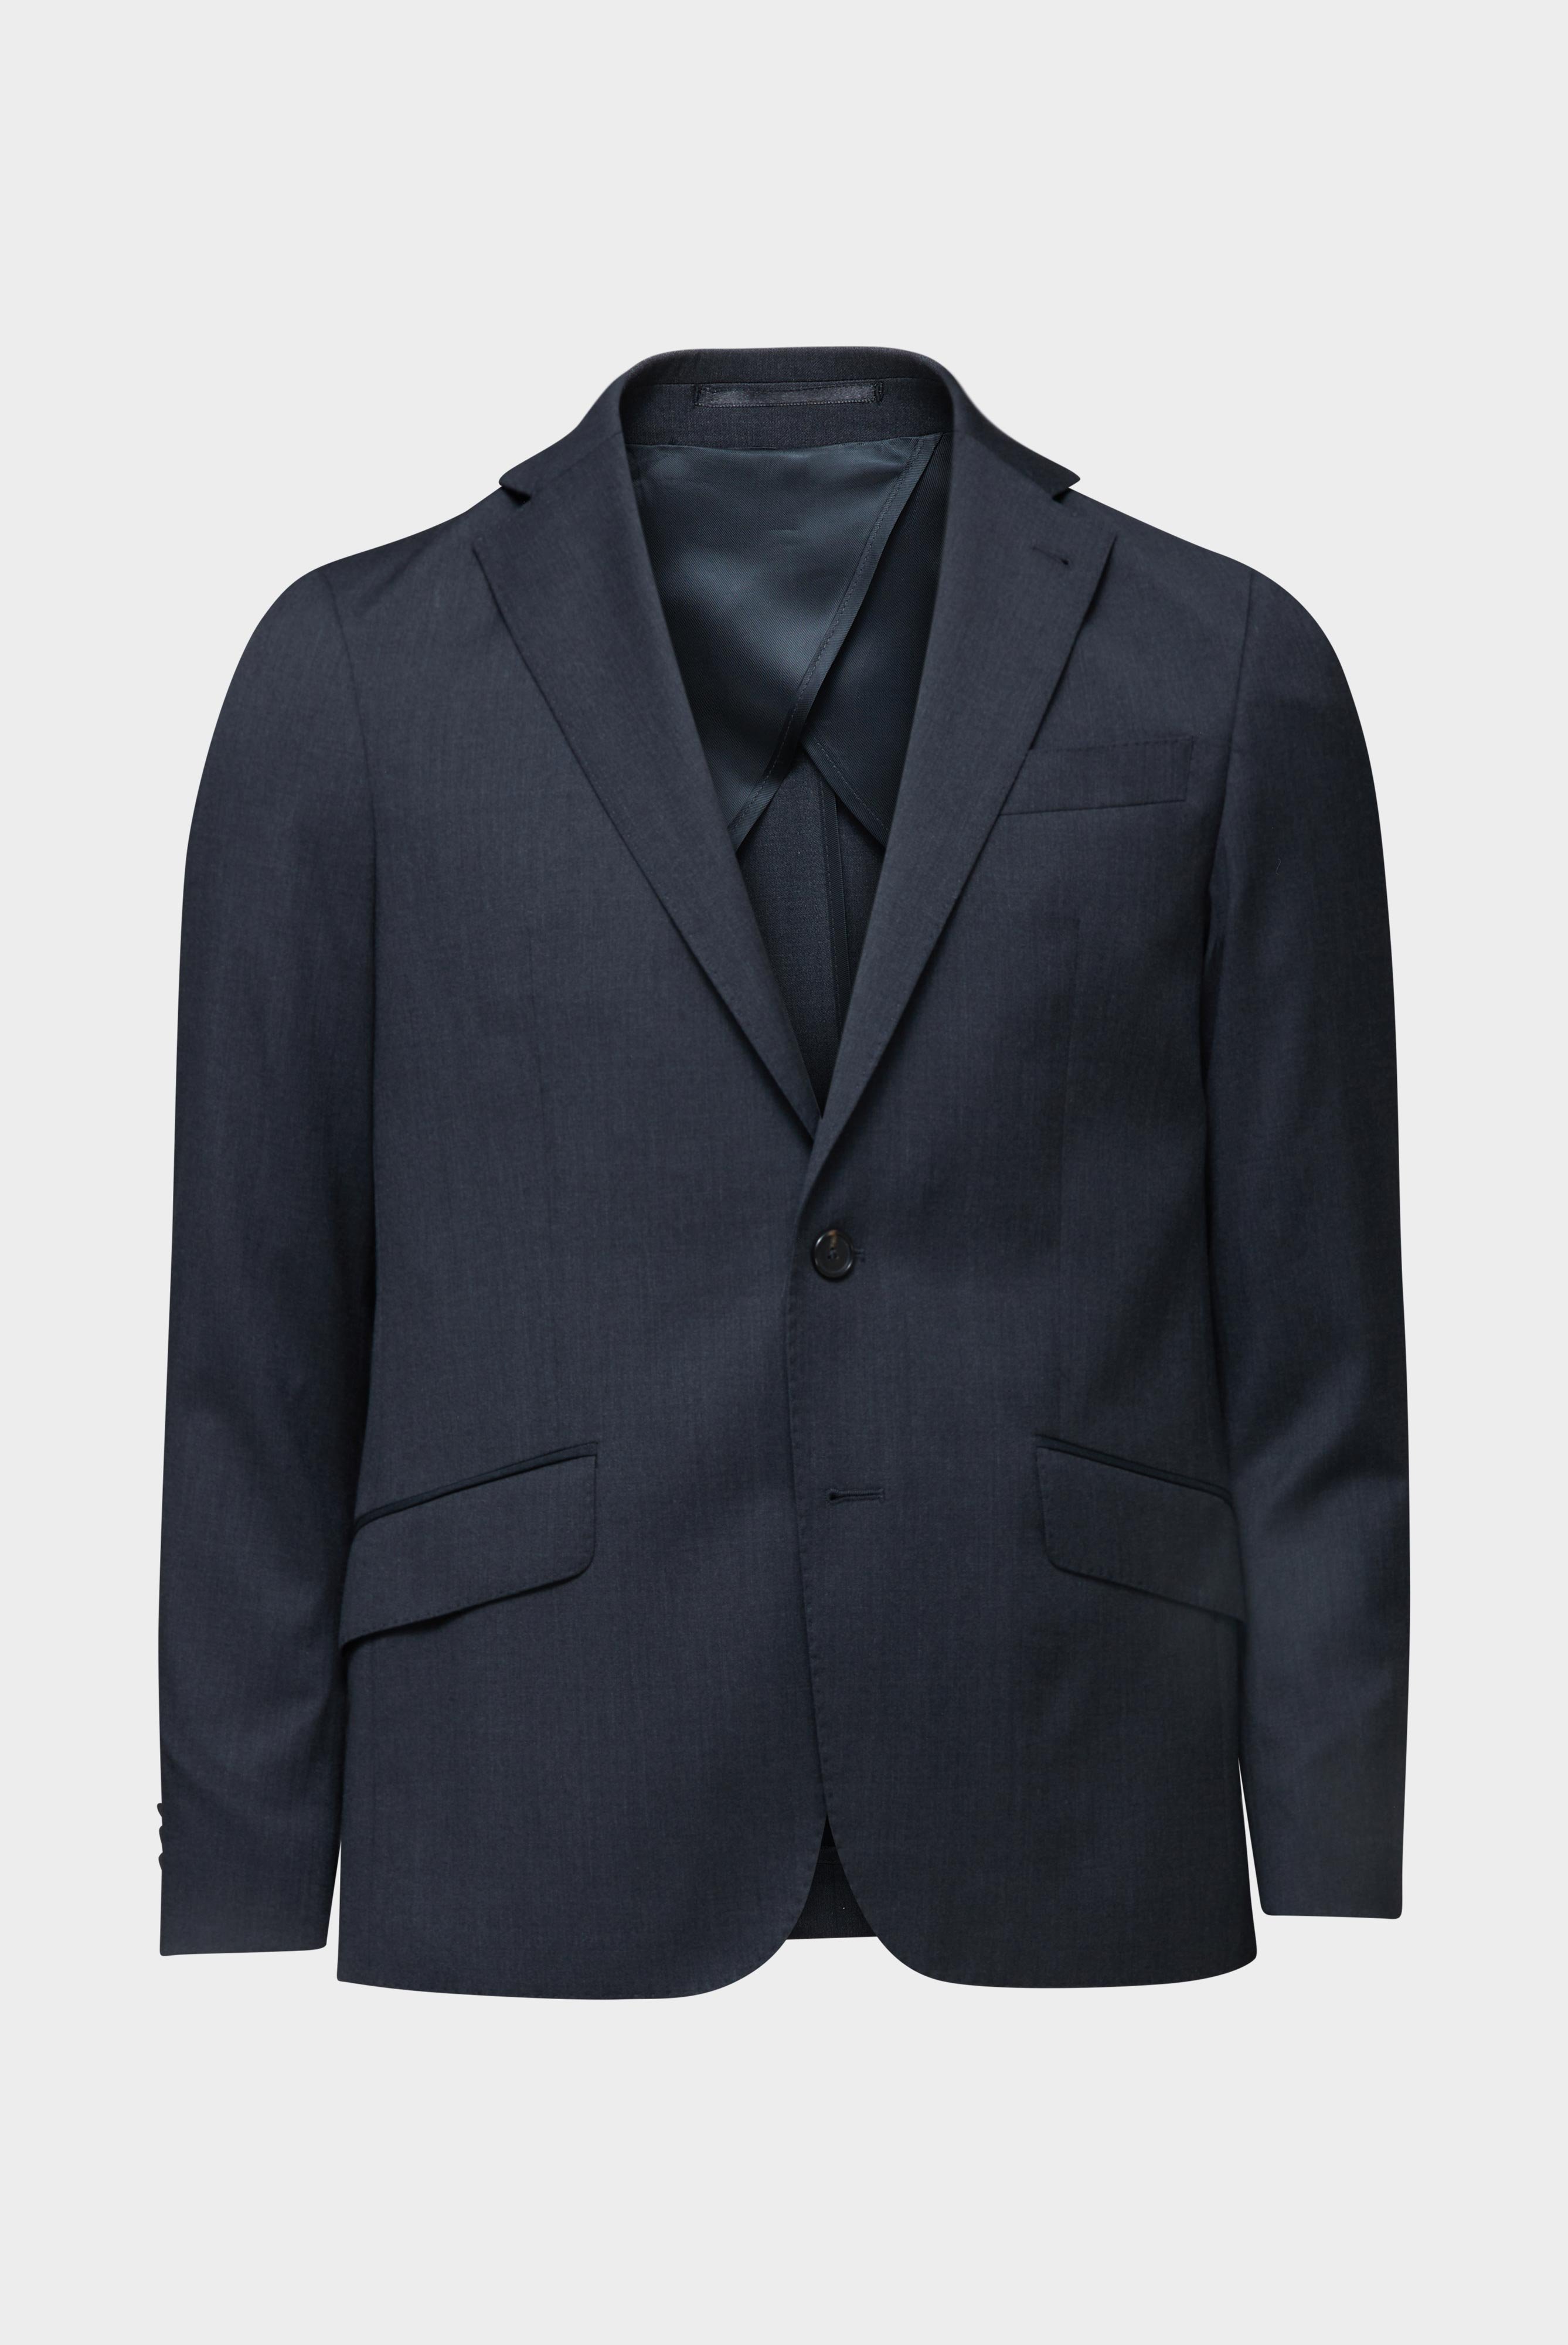 Blazers+Wool Jacket Slim Fit+20.7759..H01010.090.23